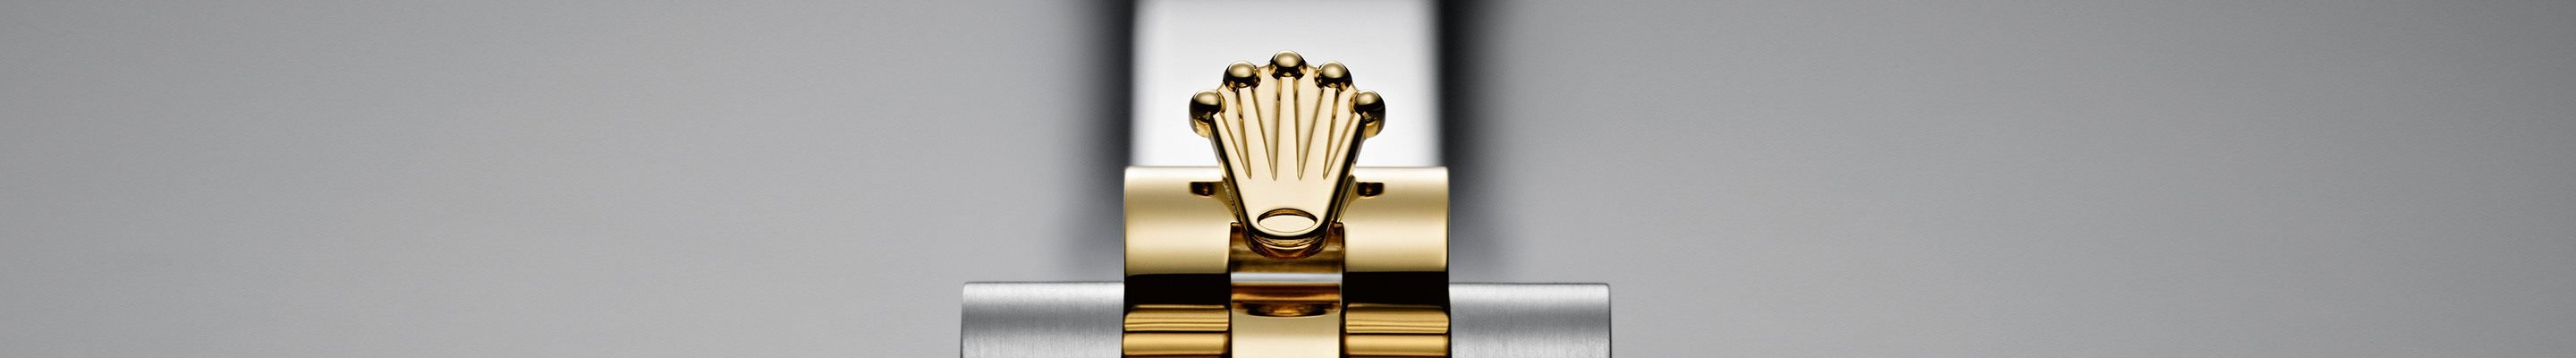 Detail showing golden Rolex Crown